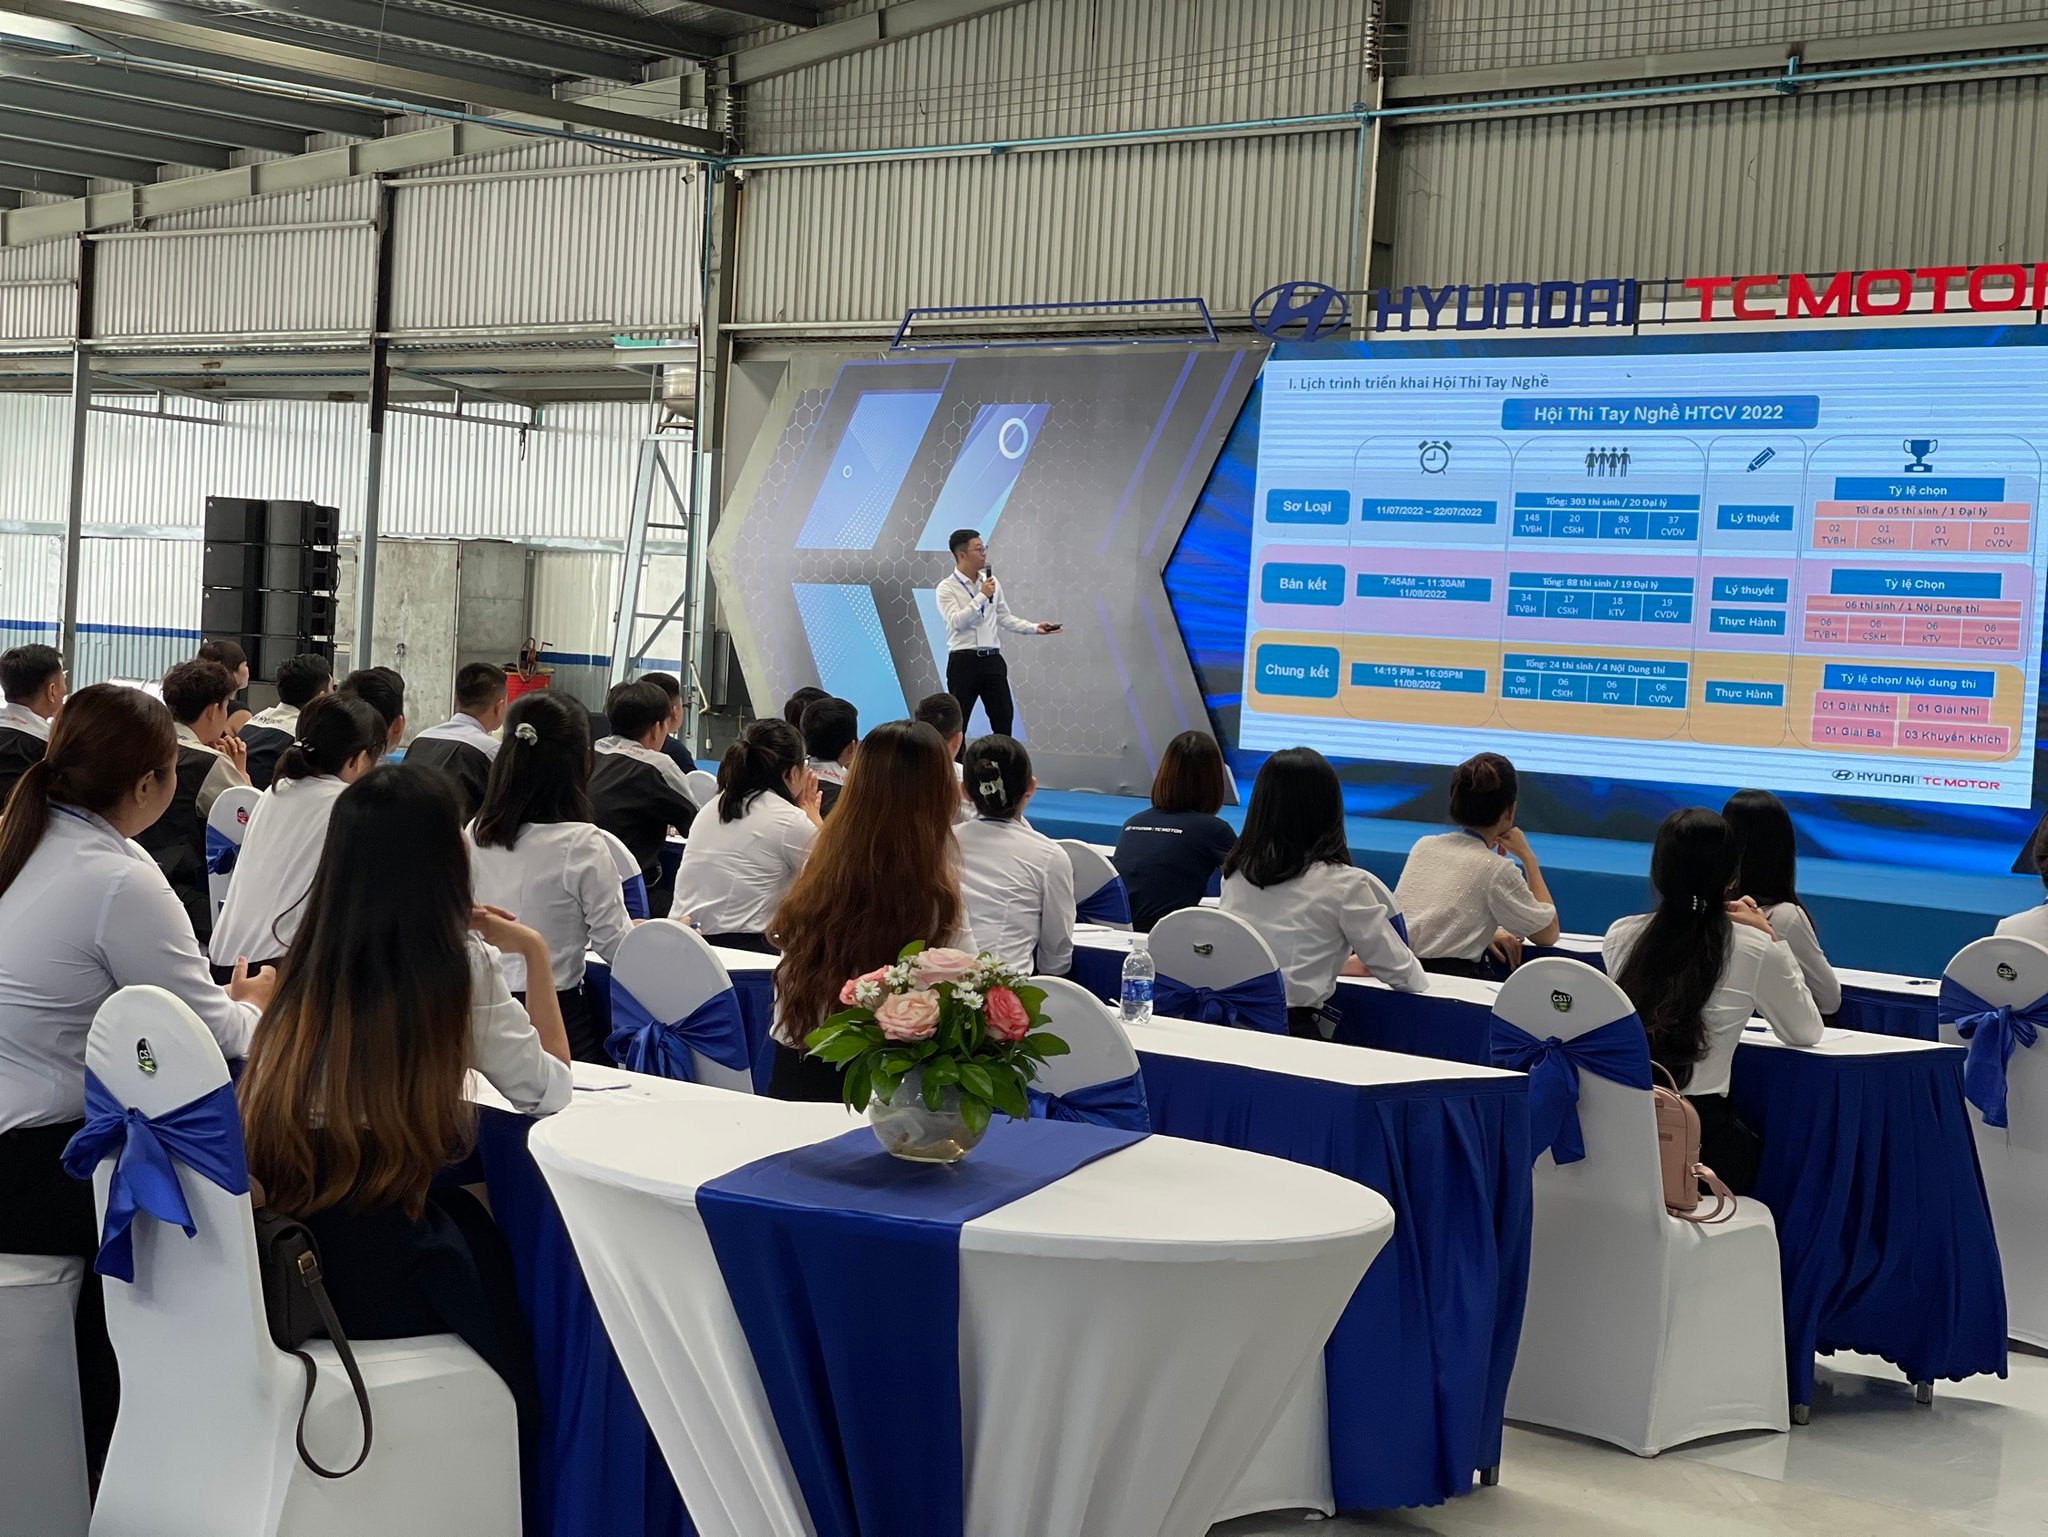 Hyundai Phố Hiến tham dự Hội thi tay nghề 2022 tại Đồng Nai do HTCV tổ chức